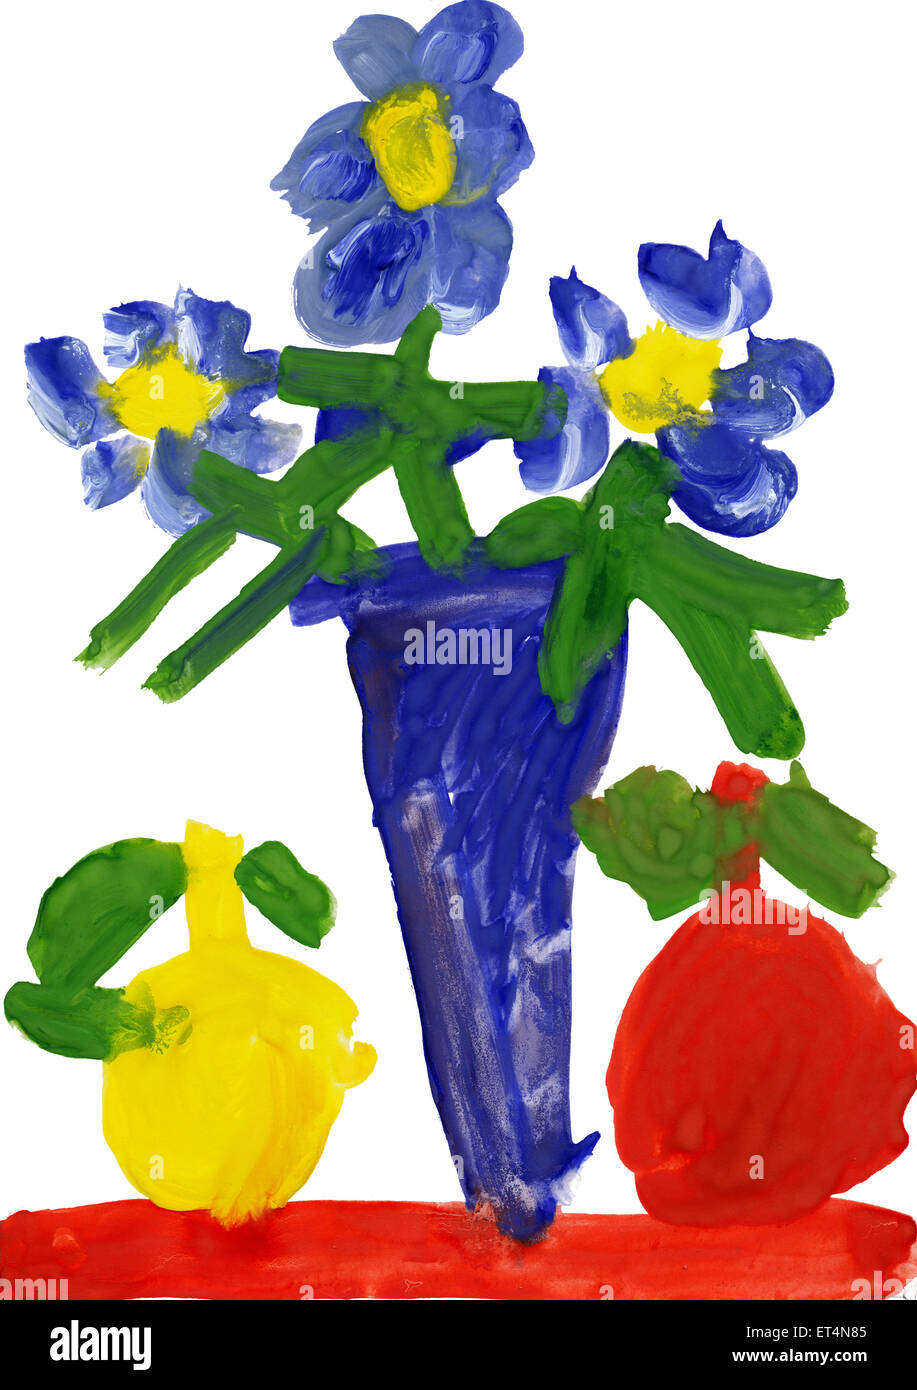 Dessin d'enfant à l'aquarelle. Vase avec fleurs et pommes Banque D'Images